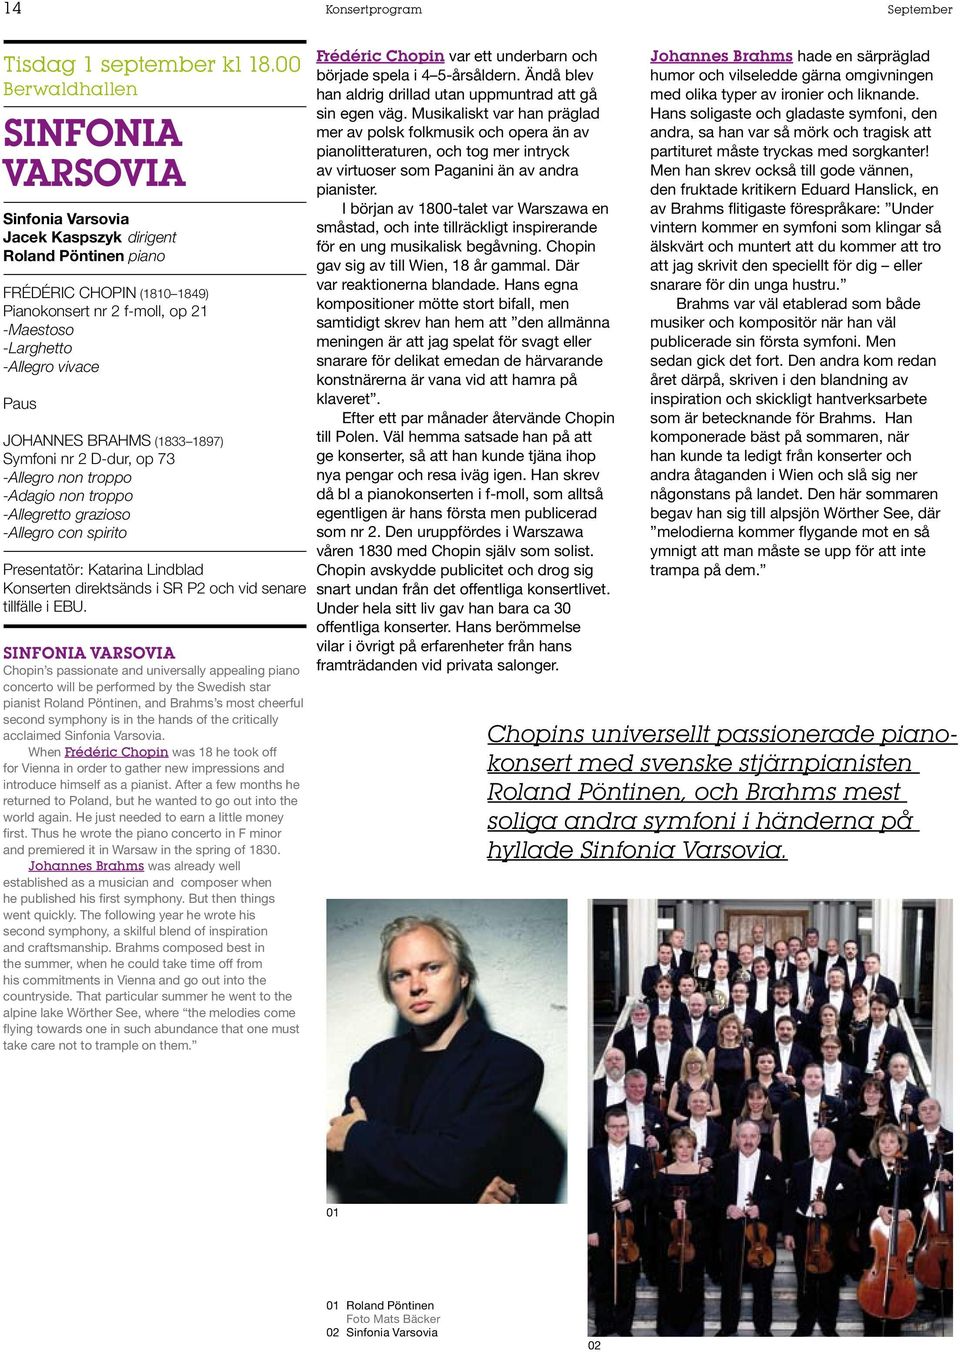 Brahms (1833 1897) Symfoni nr 2 D-dur, op 73 -Allegro non troppo -Adagio non troppo -Allegretto grazioso -Allegro con spirito Presentatör: Katarina Lindblad Konserten direktsänds i SR P2 och vid